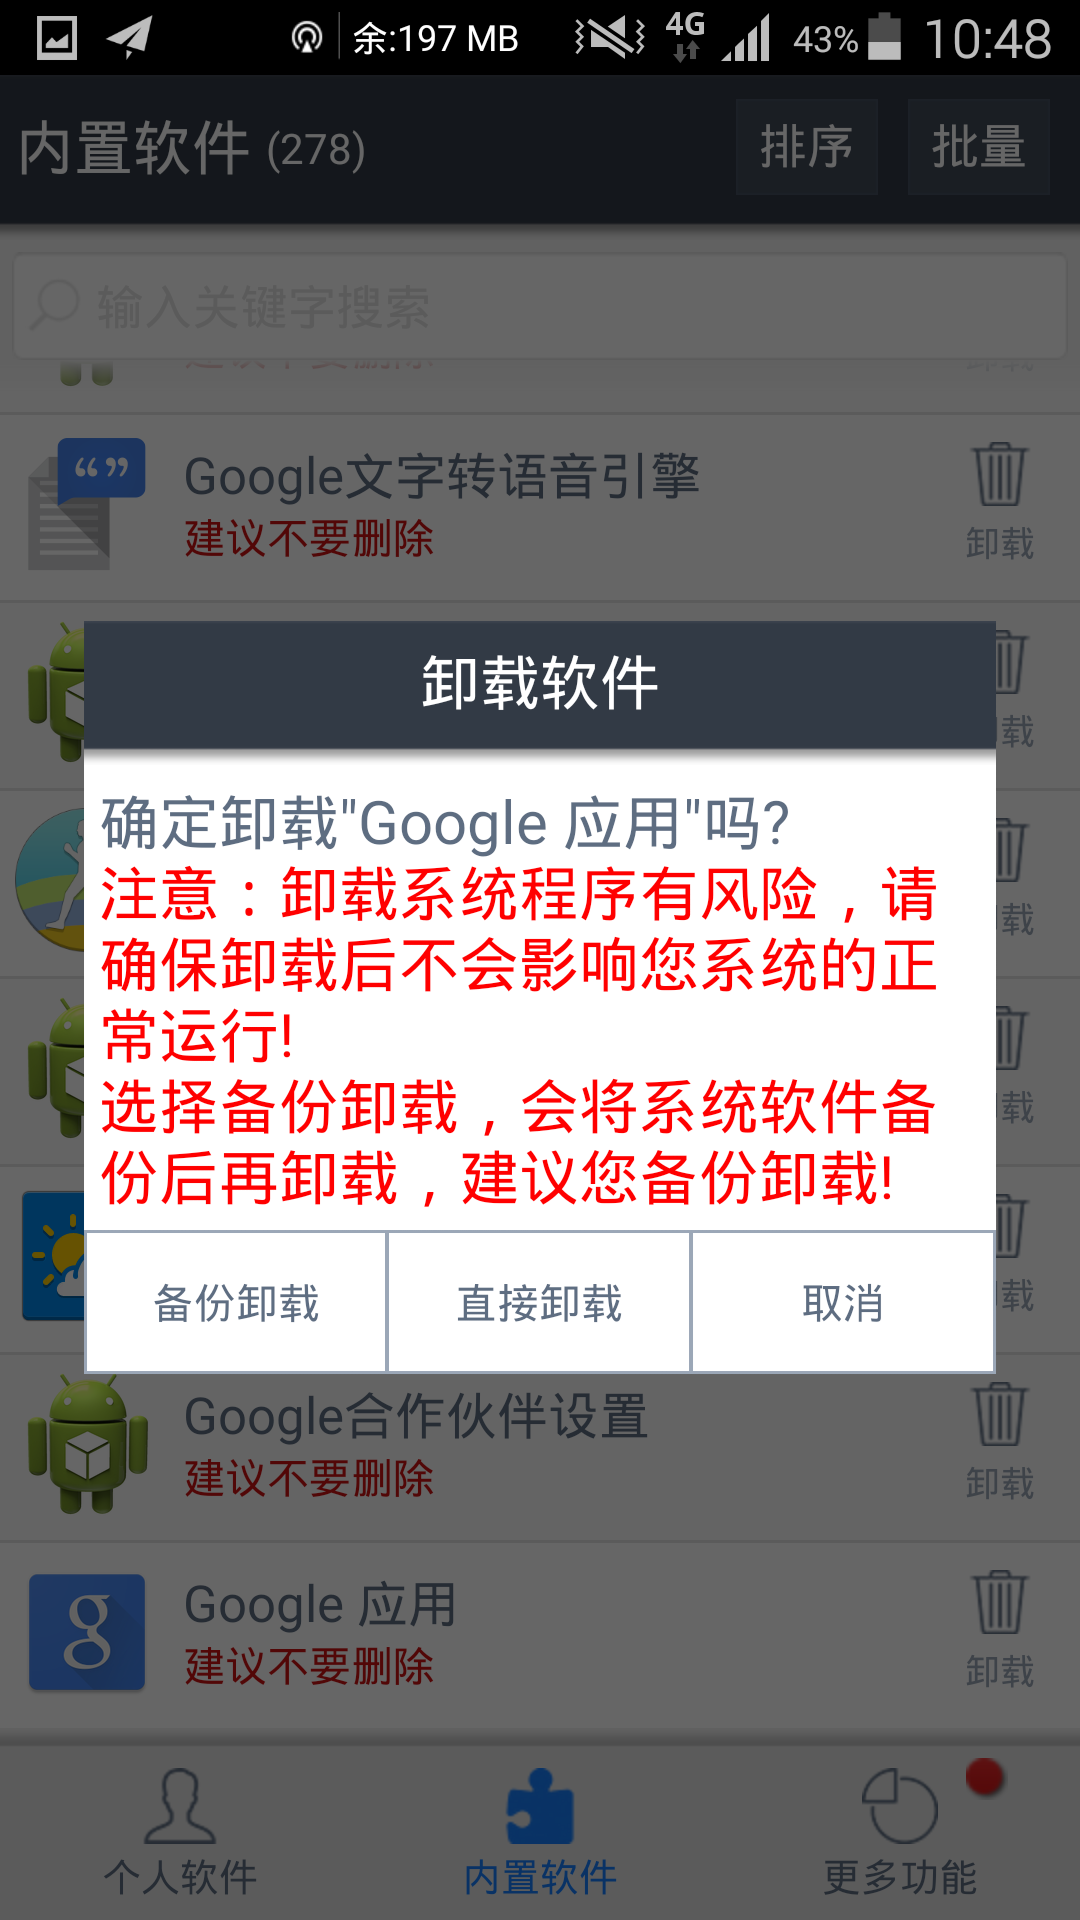 在中国大陆玩ingress的同时如何开启Google n